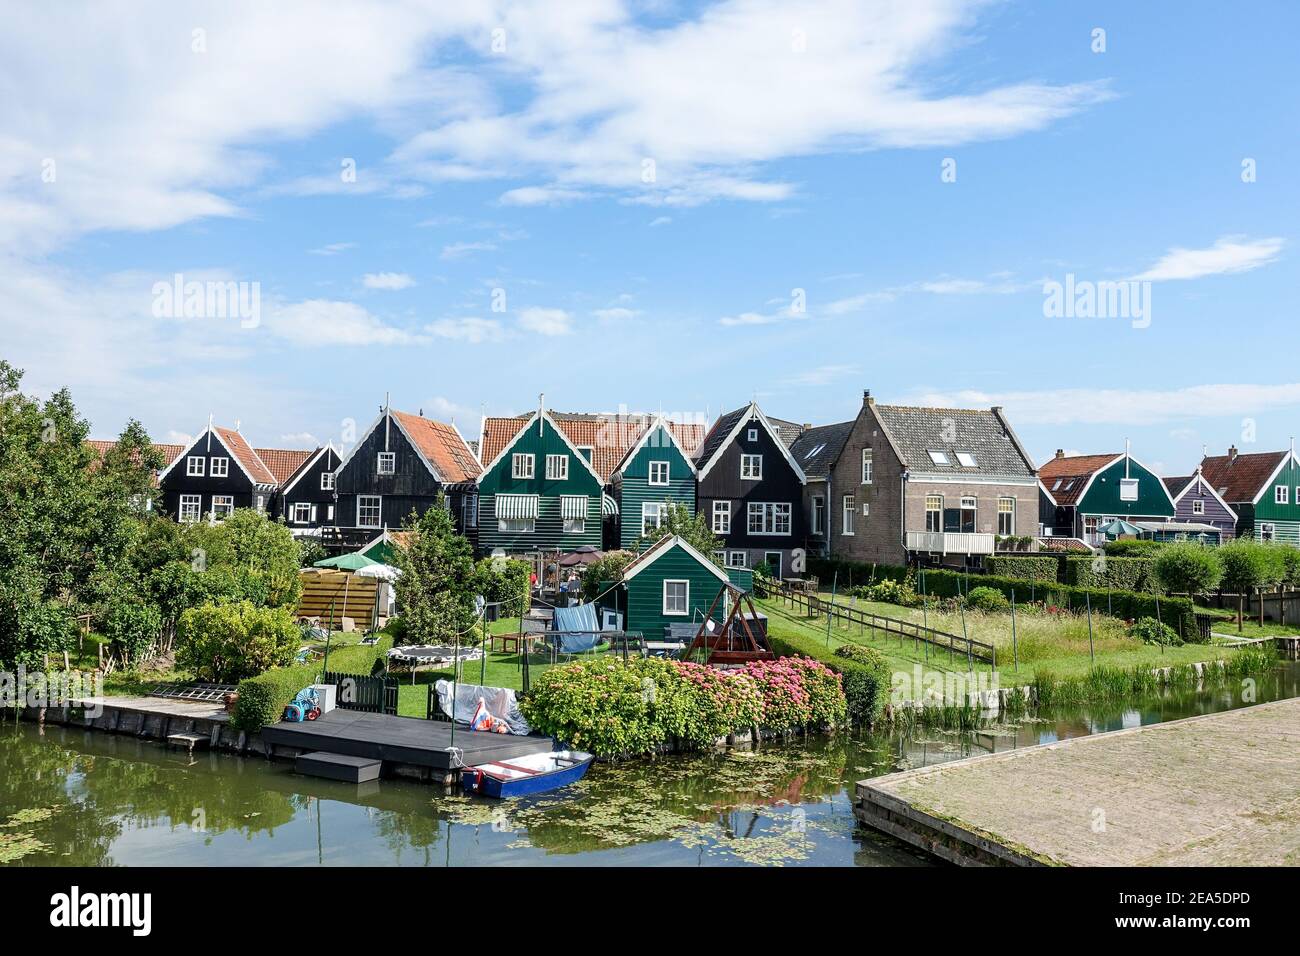 Typisch holländische Häuser im malerischen Dorf und Hafen von Marken, Nordholland, Niederlande Stockfoto